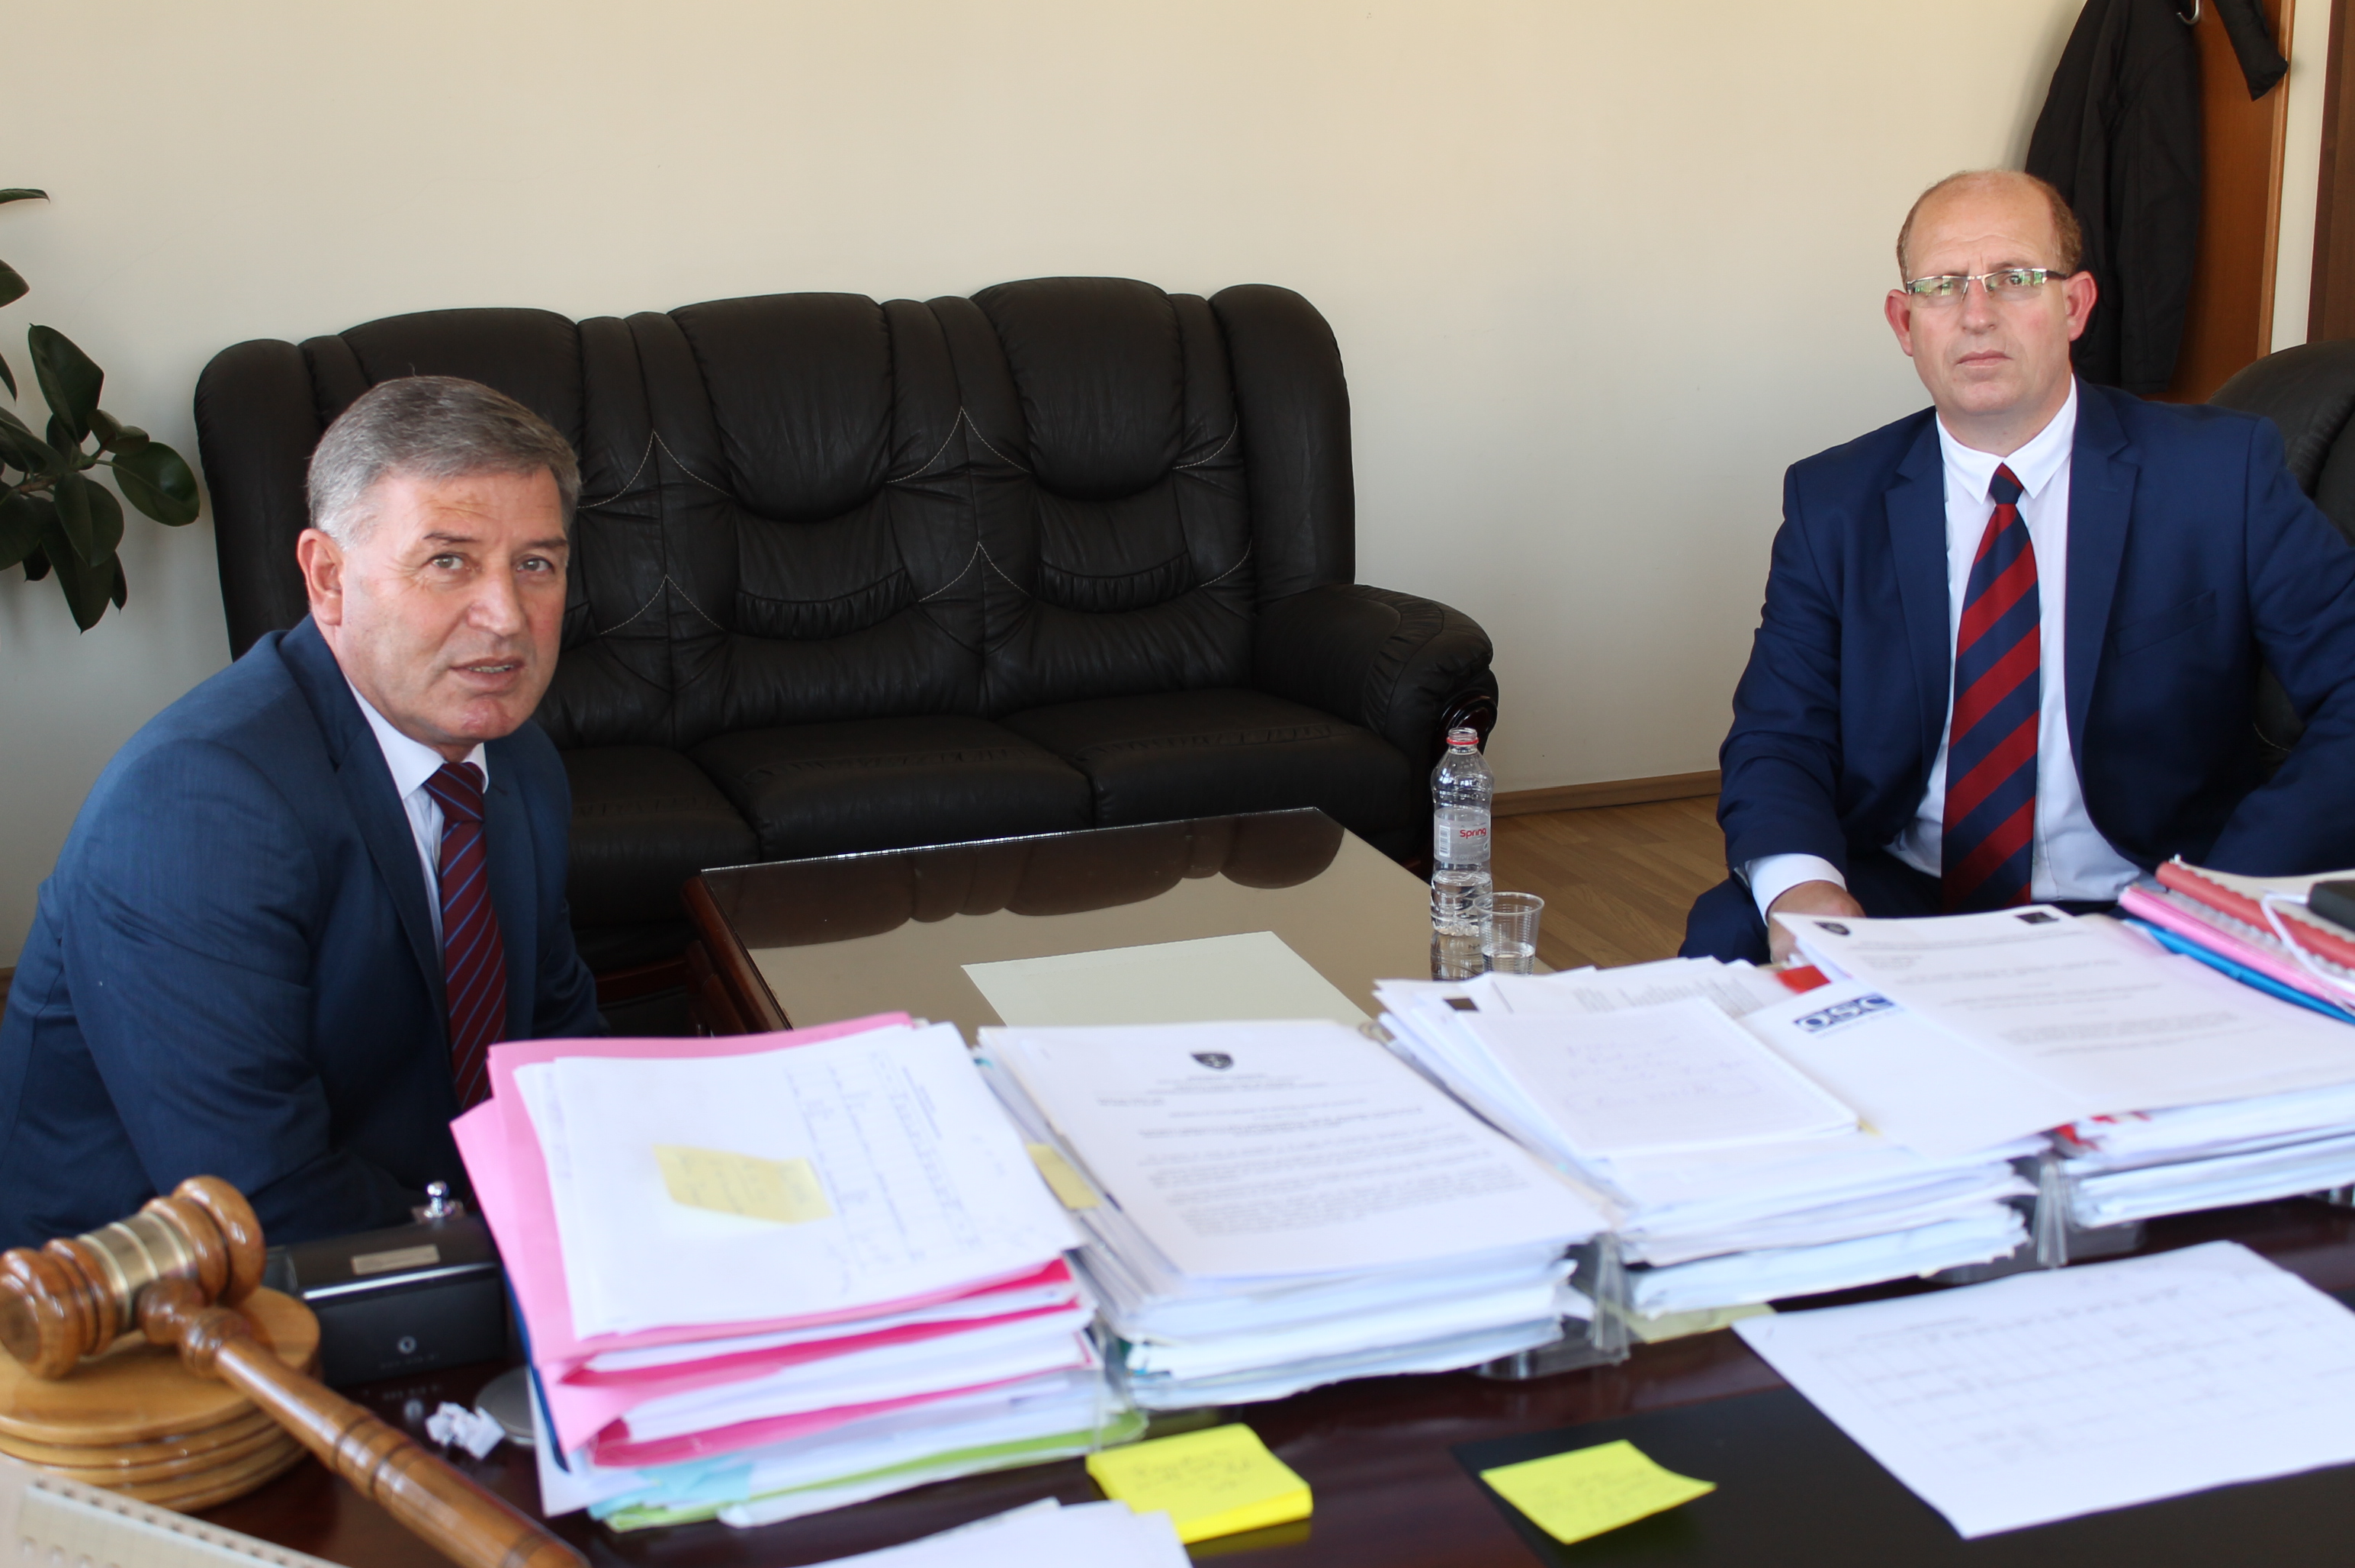 Kryetari i Gjykatës Themelore të Prizrenit priti në takim pune gjyqtarin Agim Maliqin, Koordinator i KGJK, për lëndët shenjëstruara në mekanizmin përcjellës dhe lëndët që lidhen me natyrën korruptive